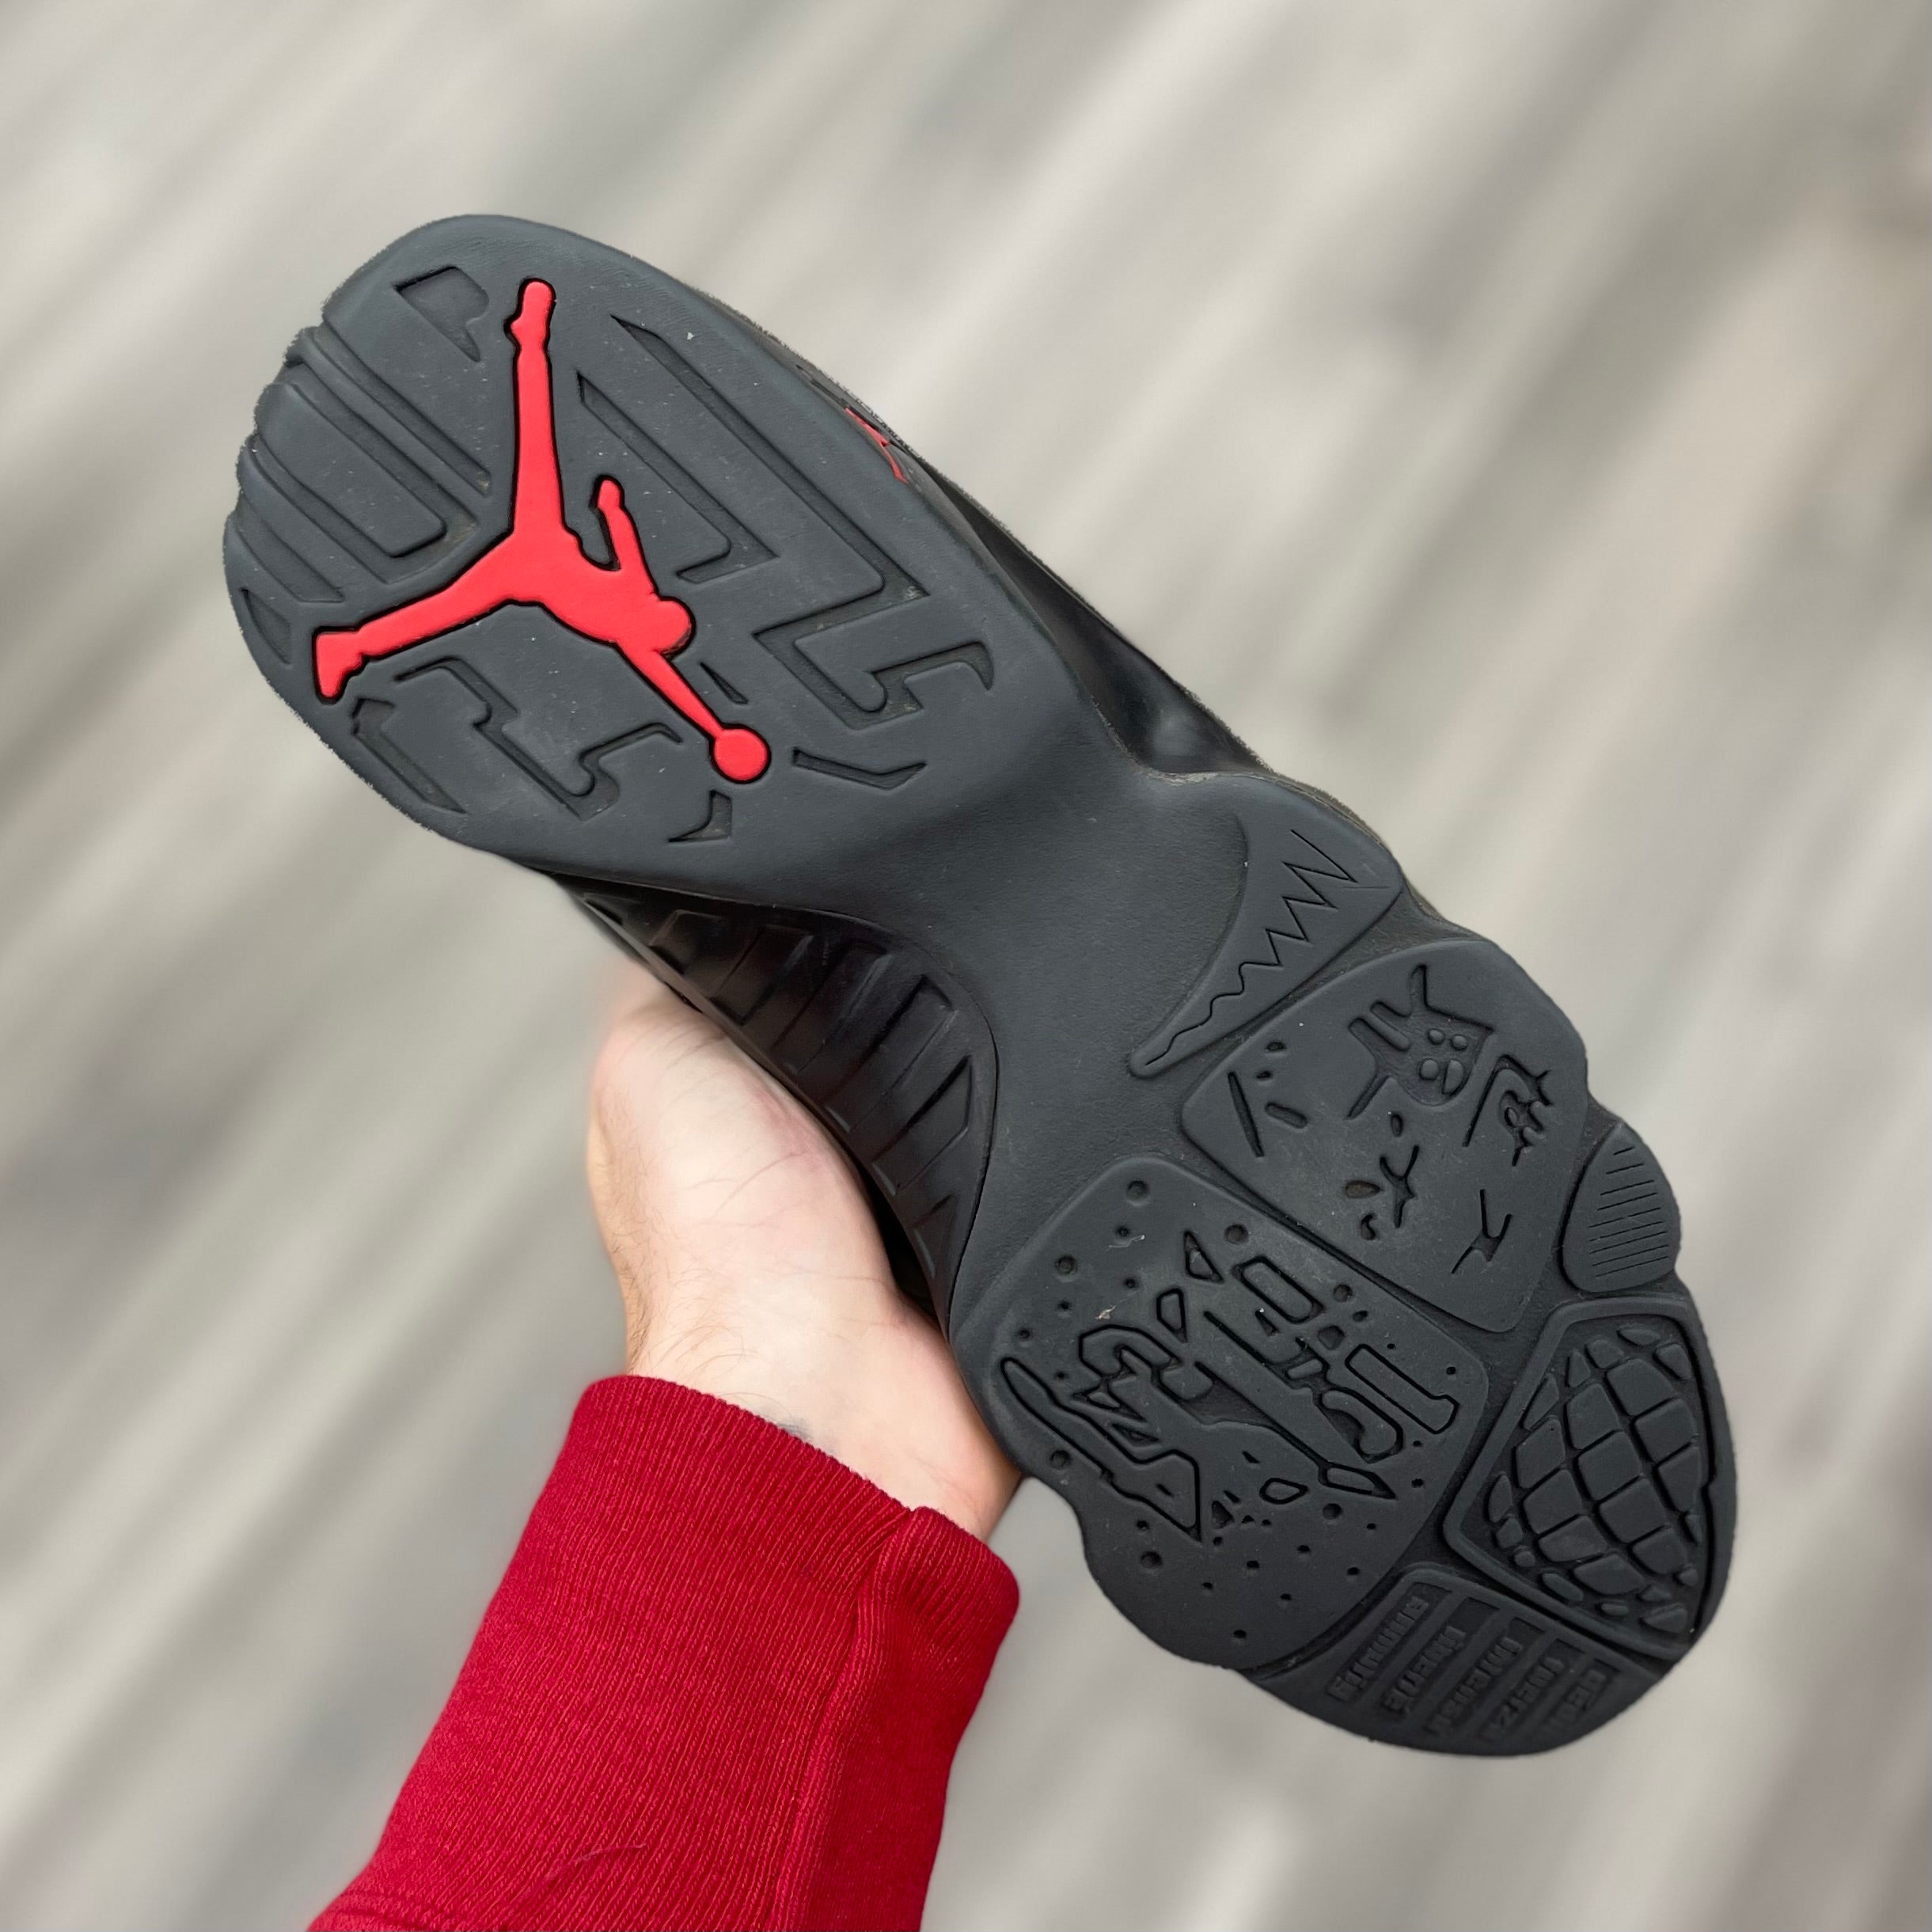 Air Jordan 9 Retro “Bred Patent"